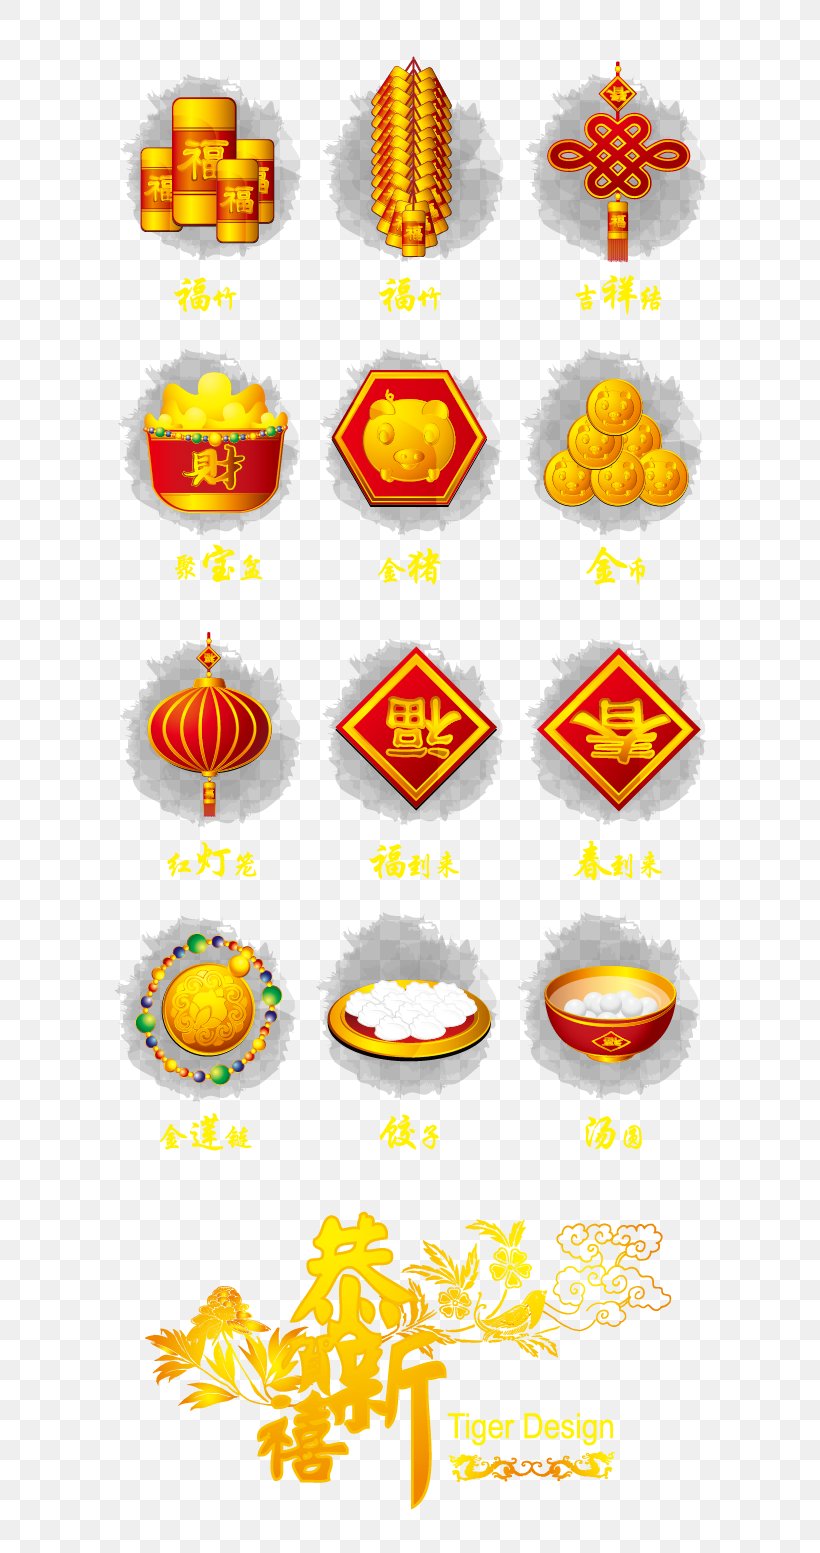 Chinese New Year Adobe Illustrator Clip Art, PNG, 687x1553px, Chinese New Year, Festival, Lantern Festival, Motif, Orange Download Free